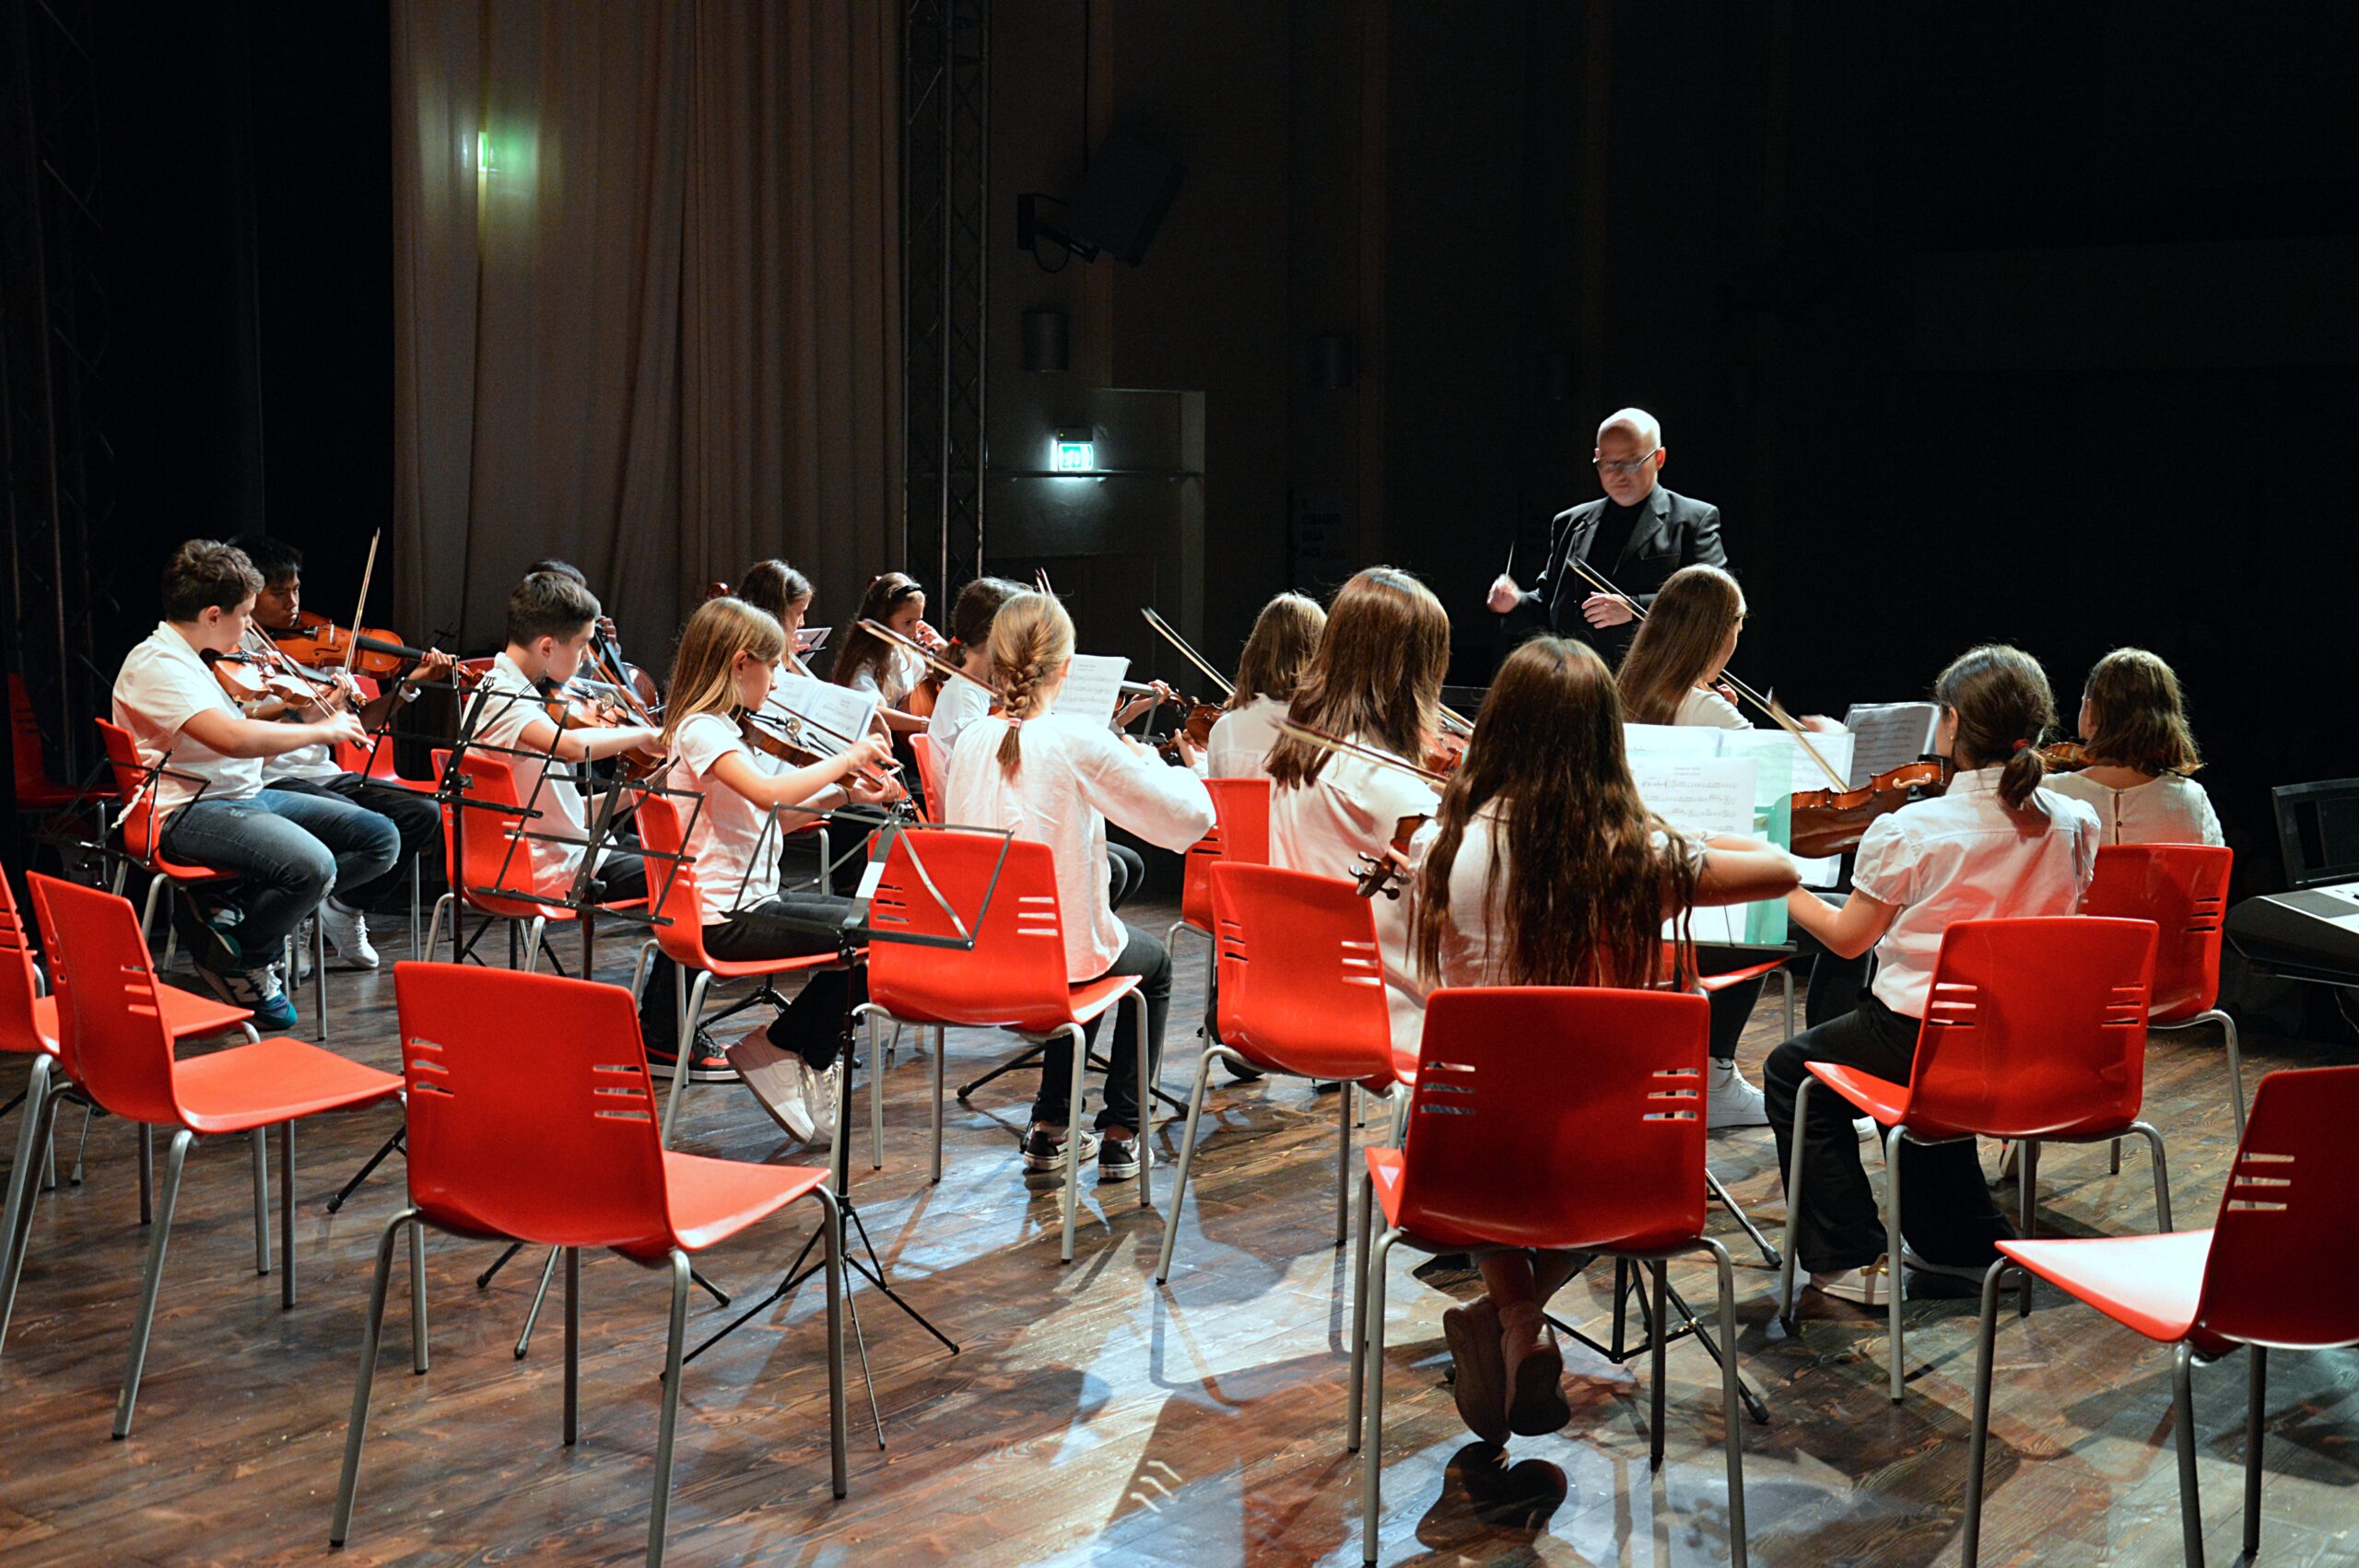 Gemellaggio tra l’istituto musicale di San Marino e la scuola di musica “Il Trillo” di Firenze